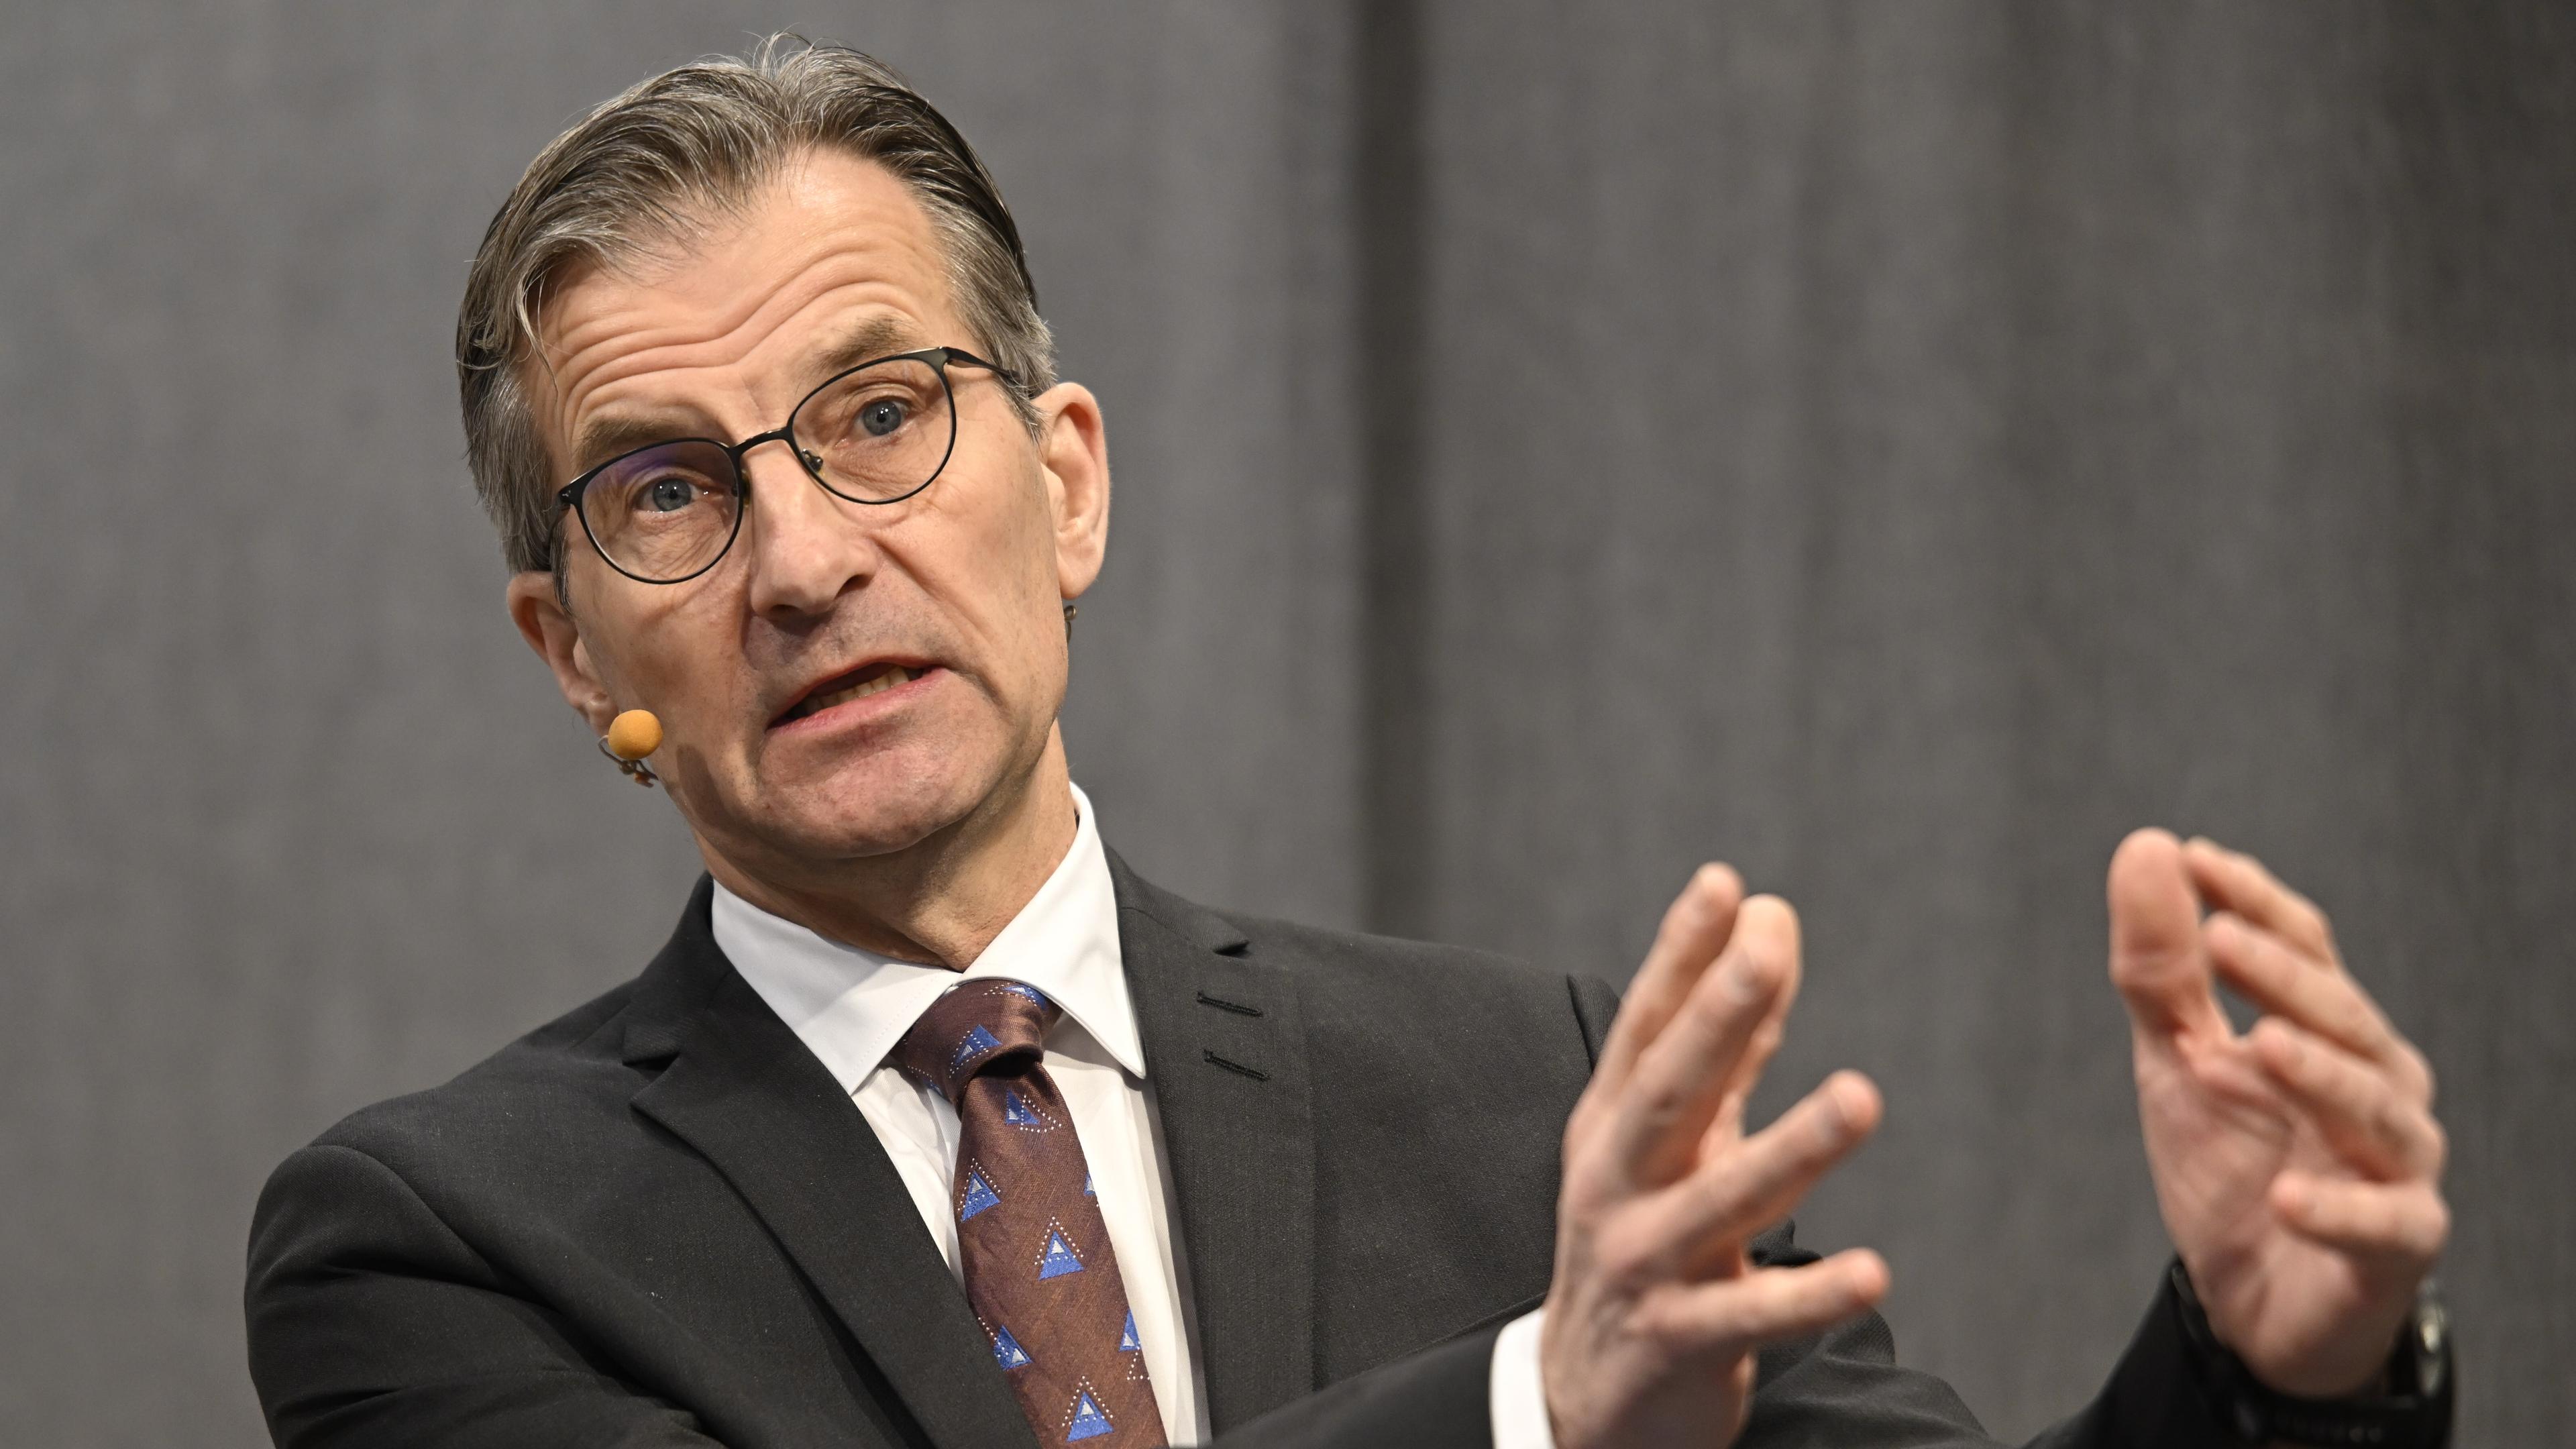 Riksbankschef Erik Thedéen och hans direktion väntas sänka styrräntan till 2 procent 2025, enligt marknadens prissättning. Foto: Fredrik Sandberg/TT